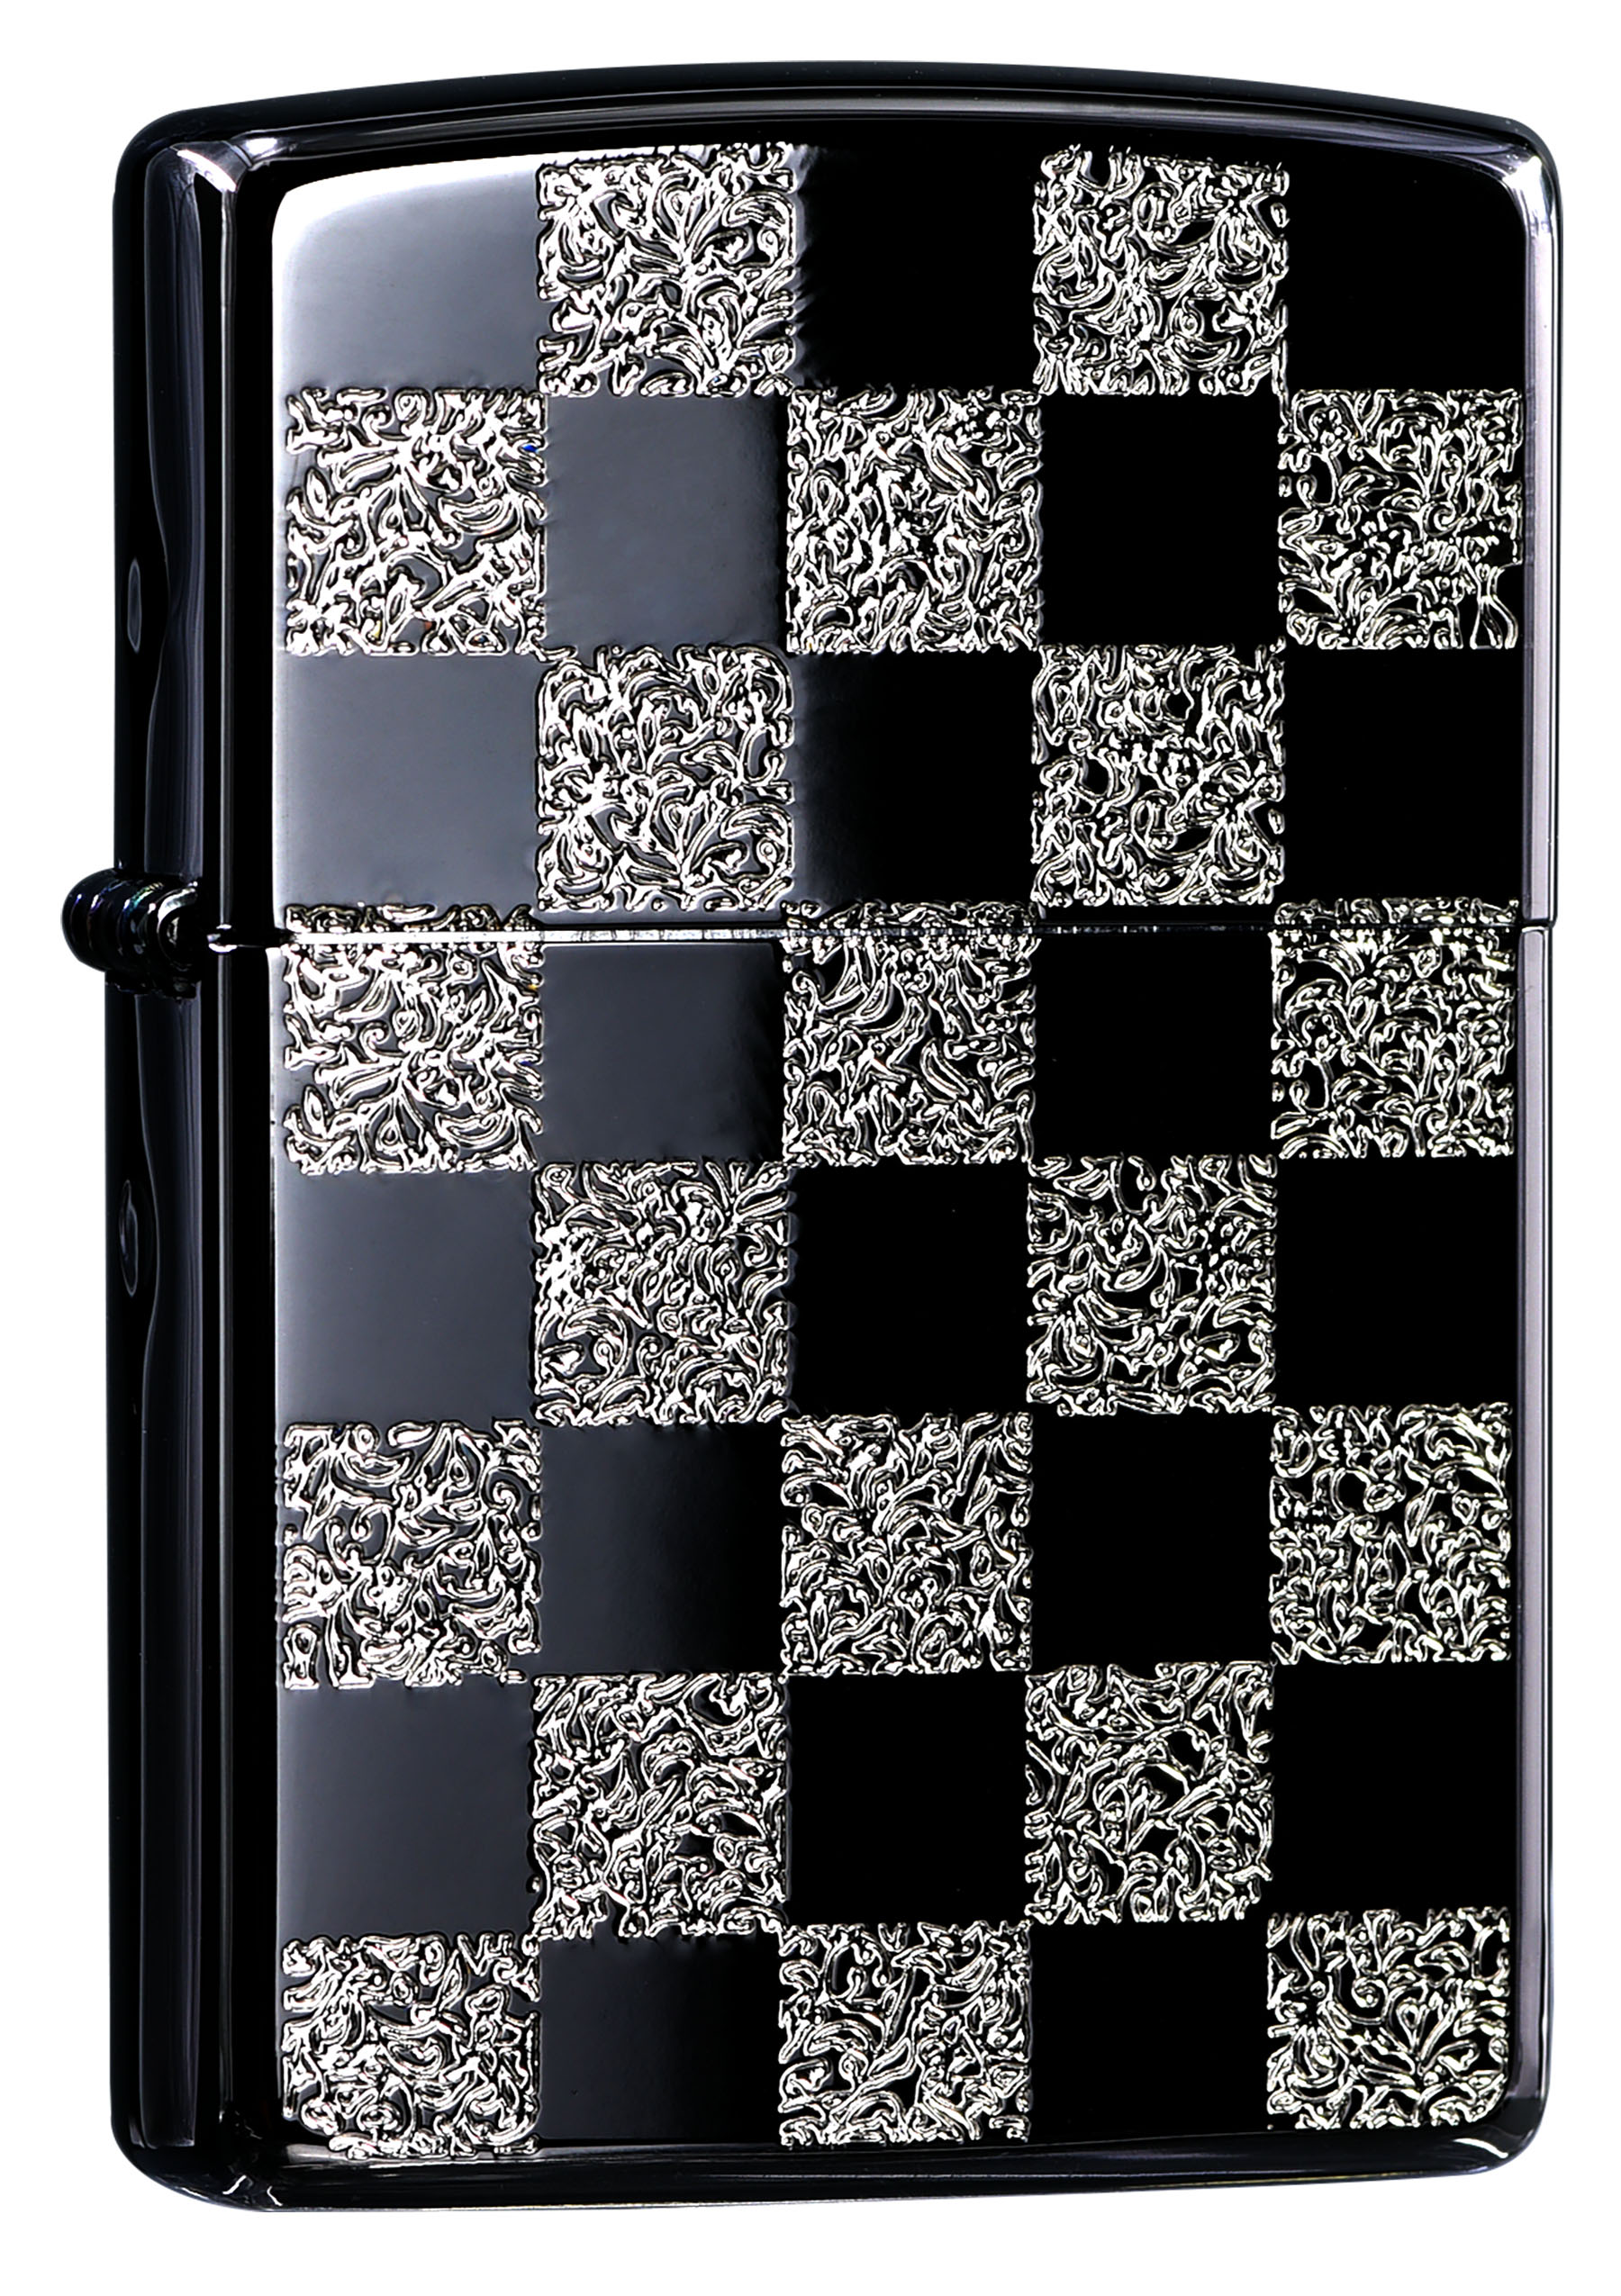 ZA-3-145B 西洋棋盤(黑銀+亮銀)防風打火機